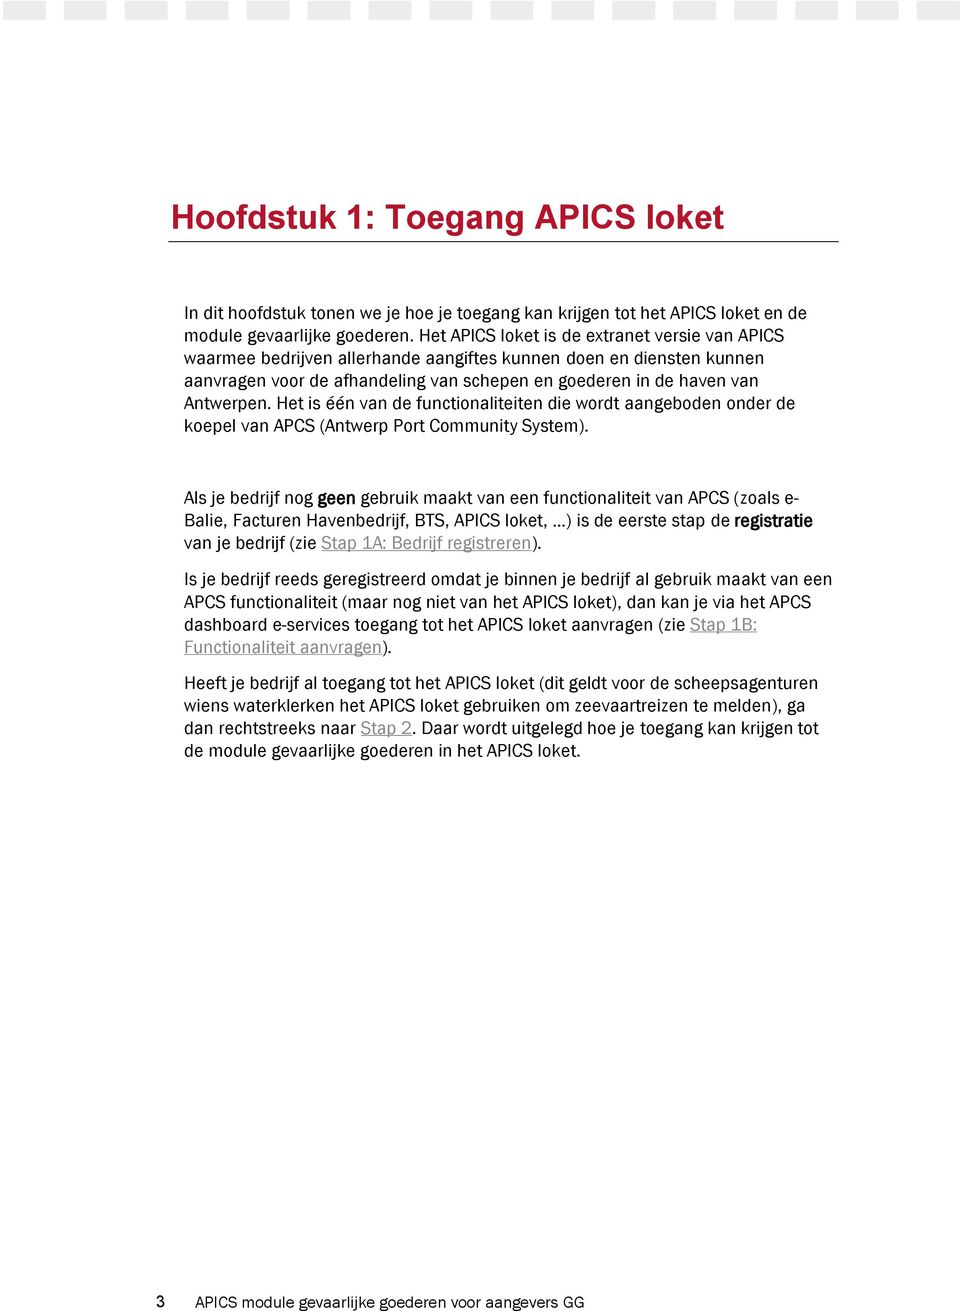 Het is één van de functionaliteiten die wordt aangeboden onder de koepel van APCS (Antwerp Port Community System).